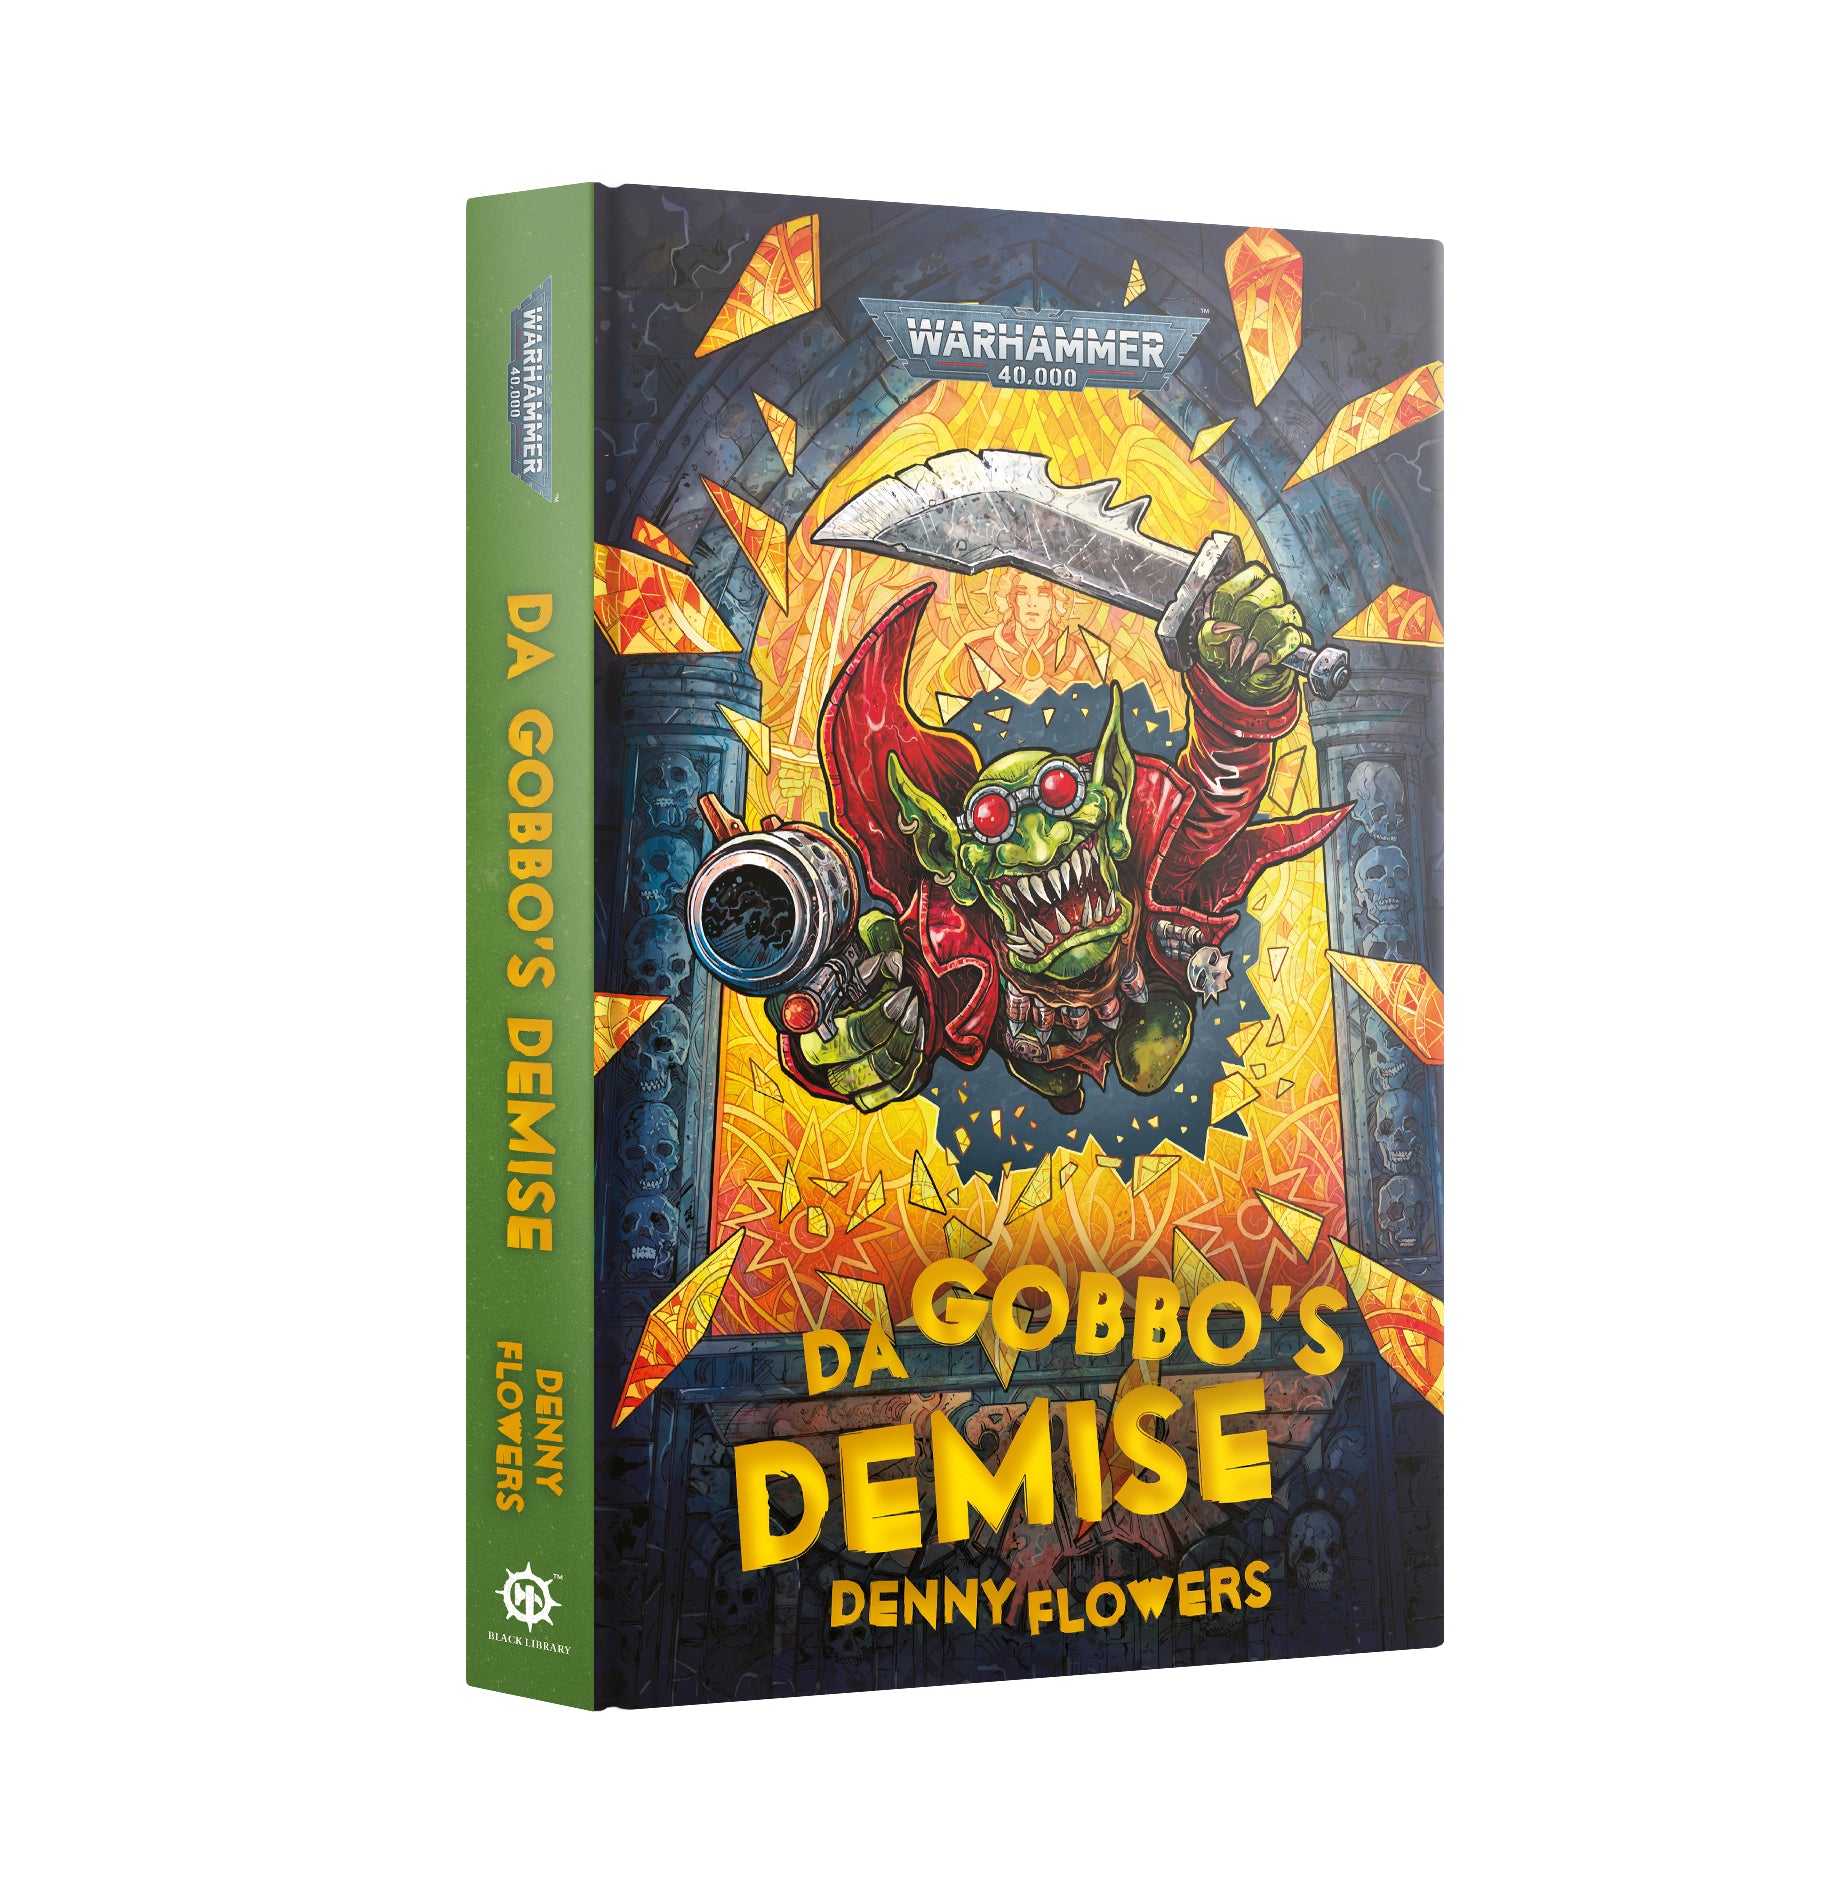 Da Gobbo's Demise (Novel) | Kessel Run Games Inc. 